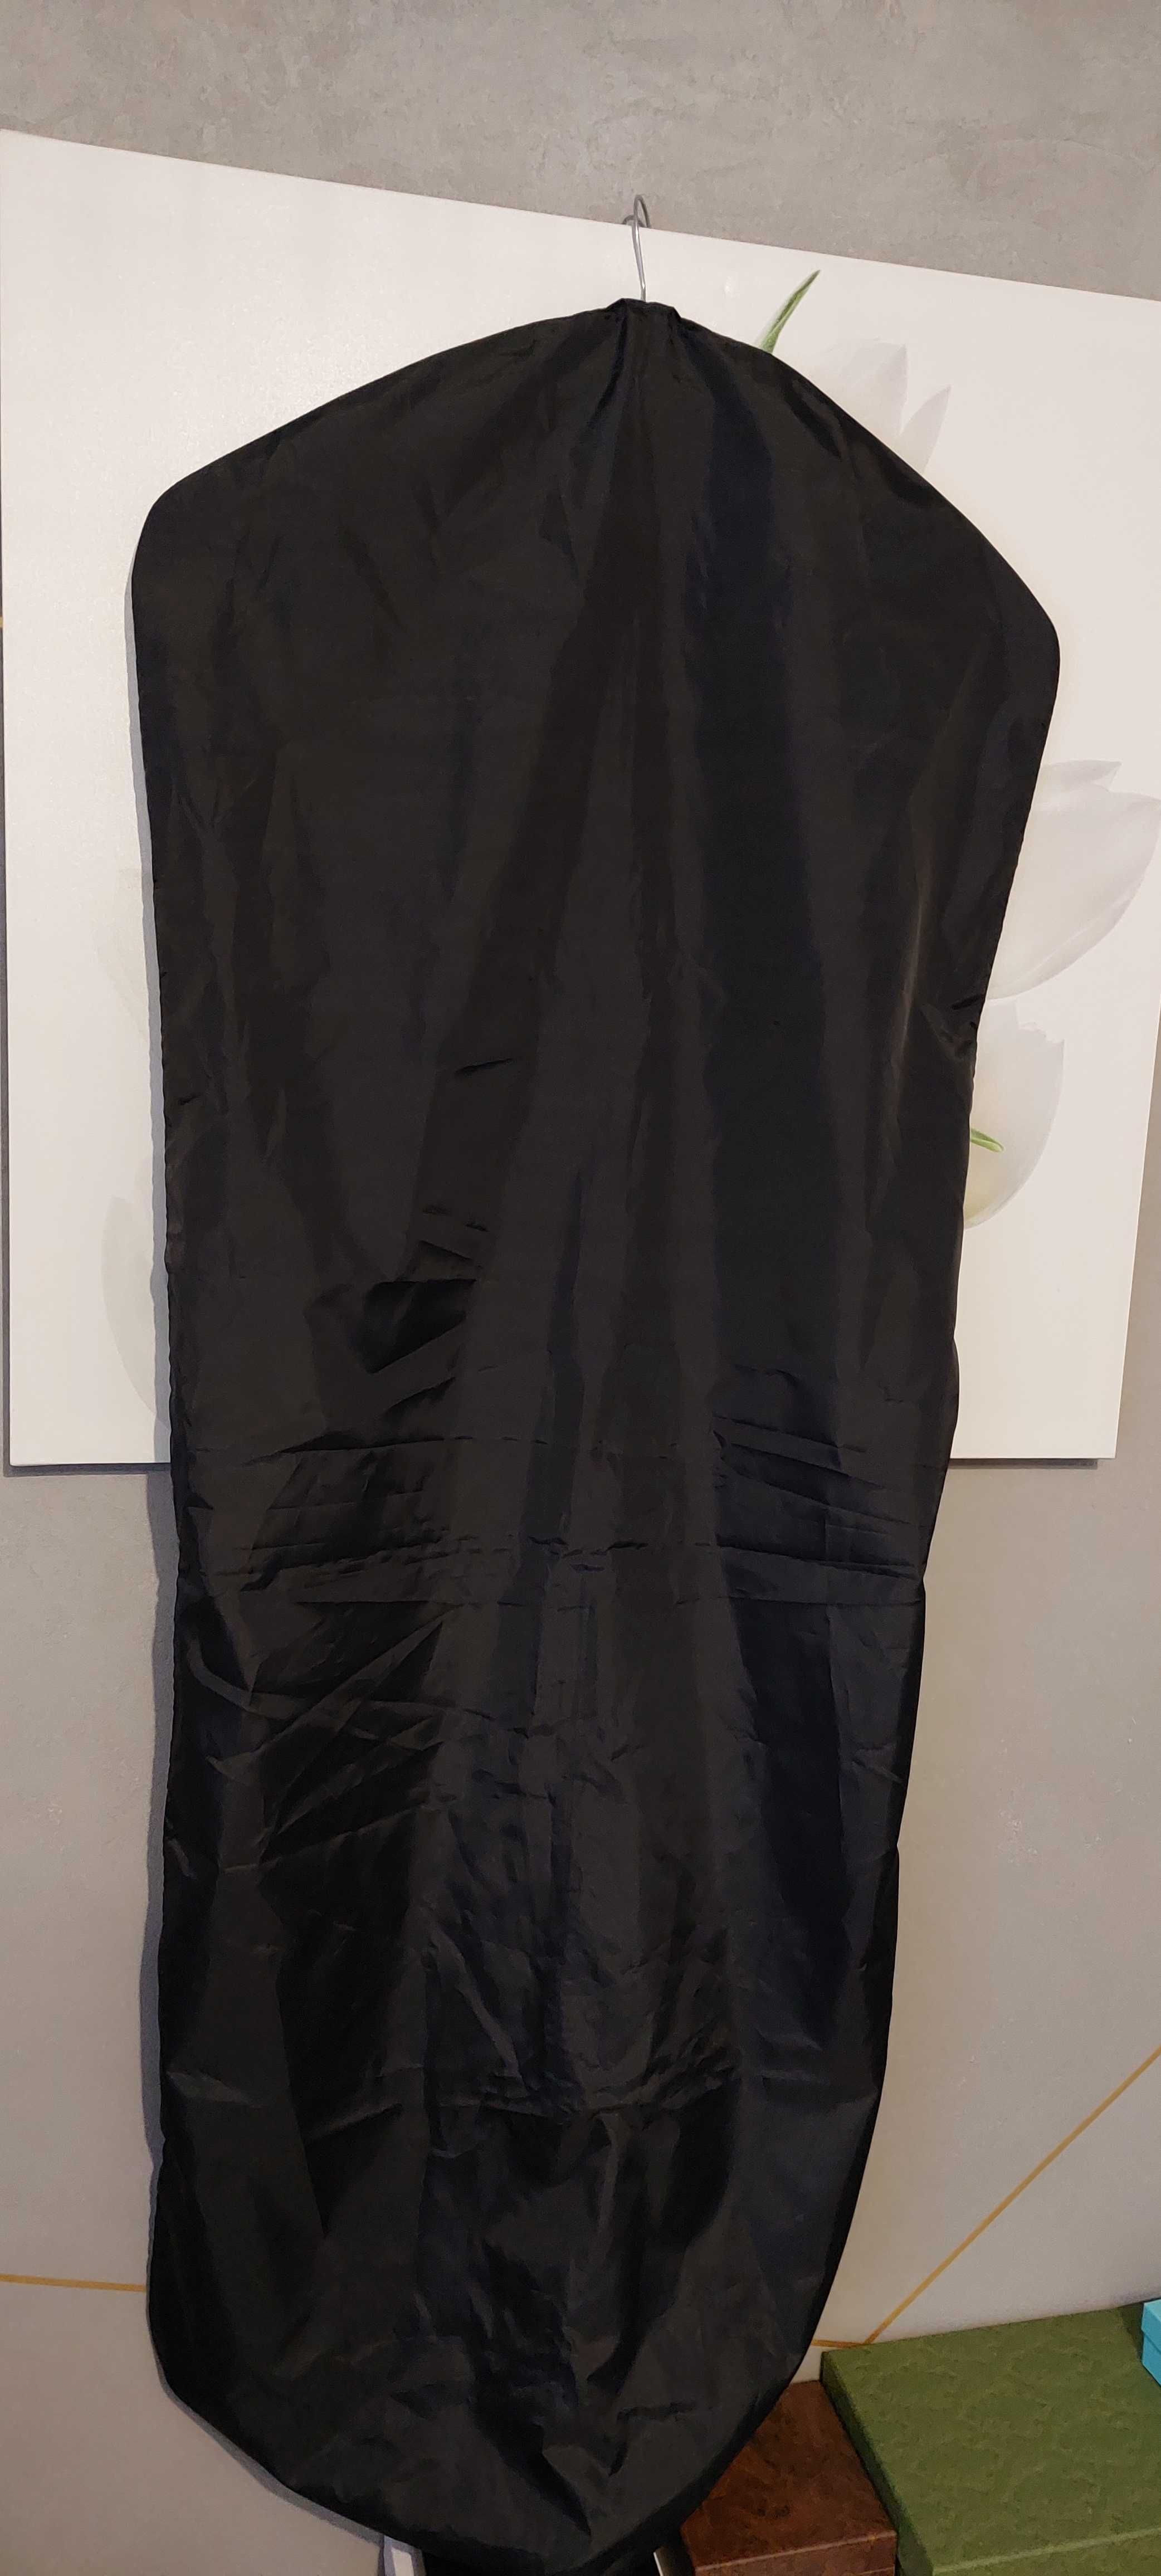 Pokrowiec na ubrania ZEGNA - oryginalny, czarny